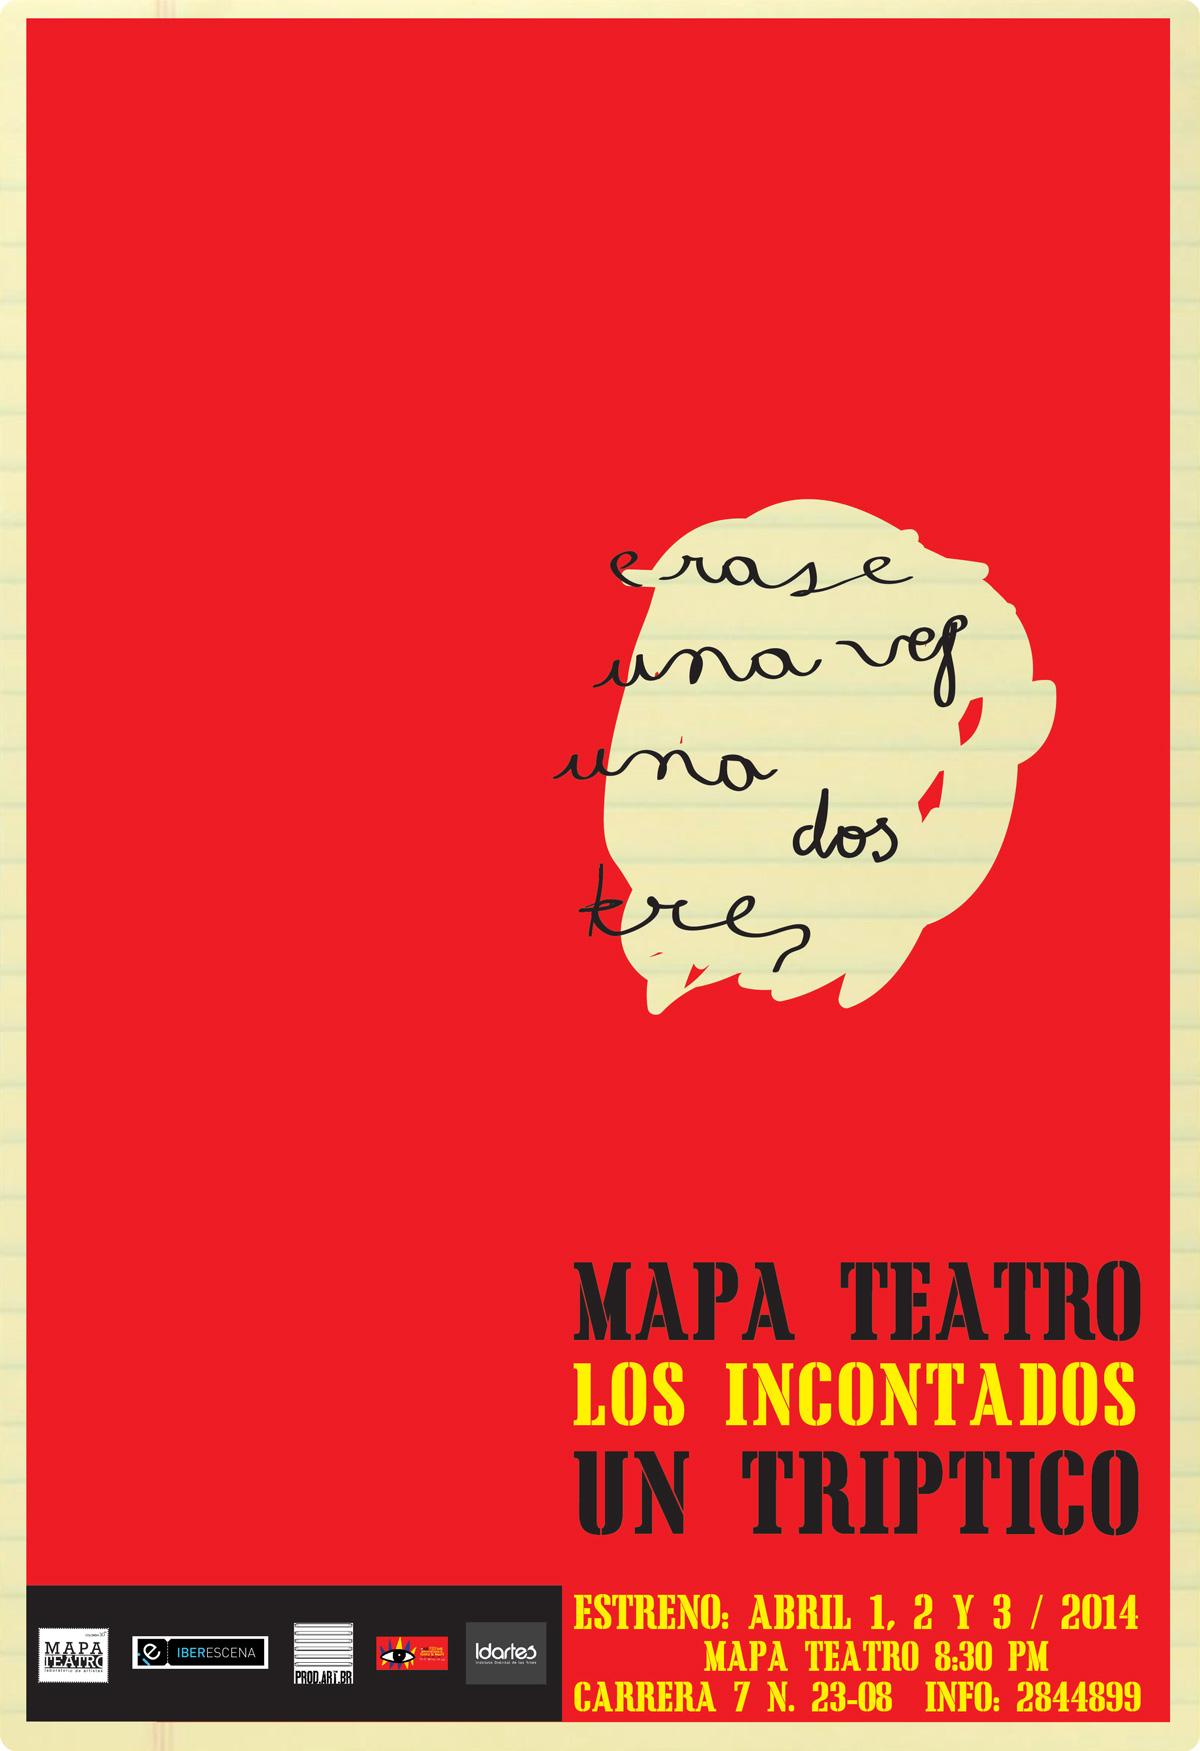 Los incontados: nueva obra de Mapa Teatro